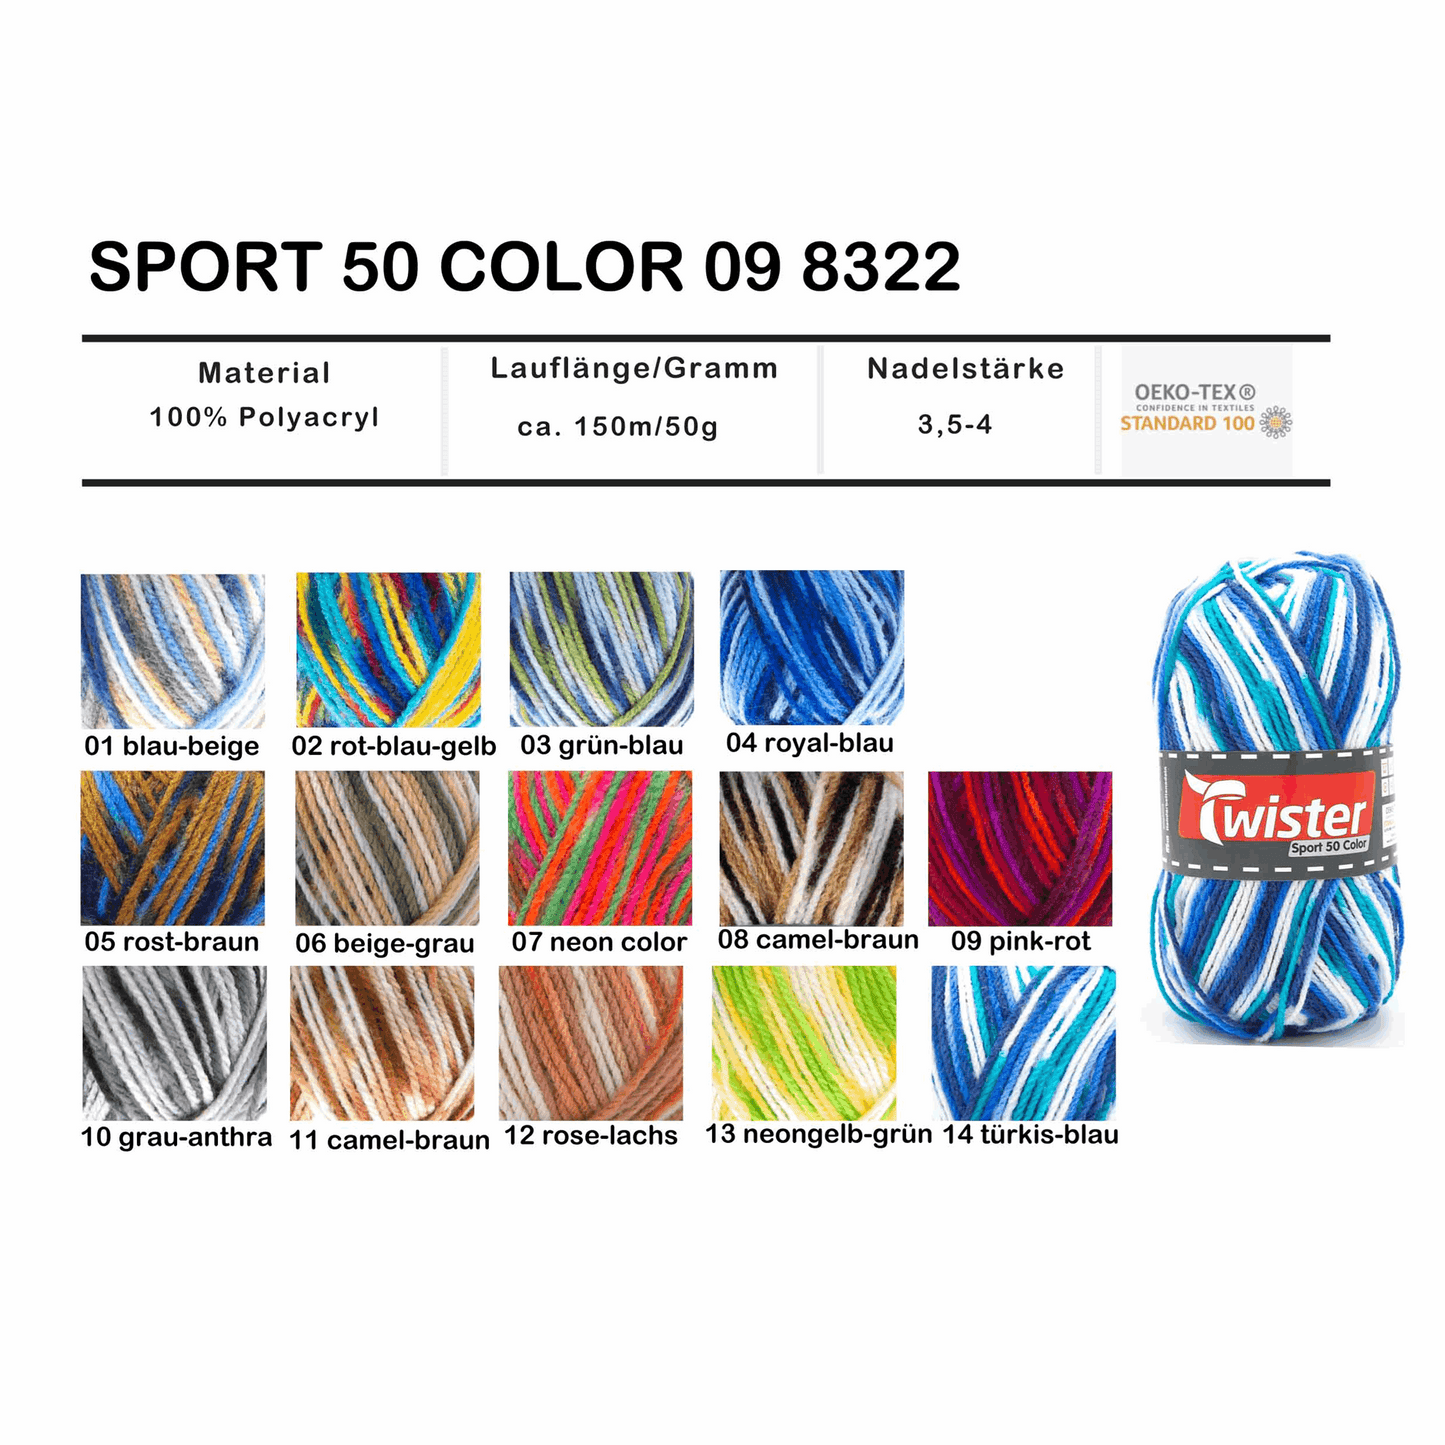 Twister Sport 50, color, 98322, color camel/brown 8